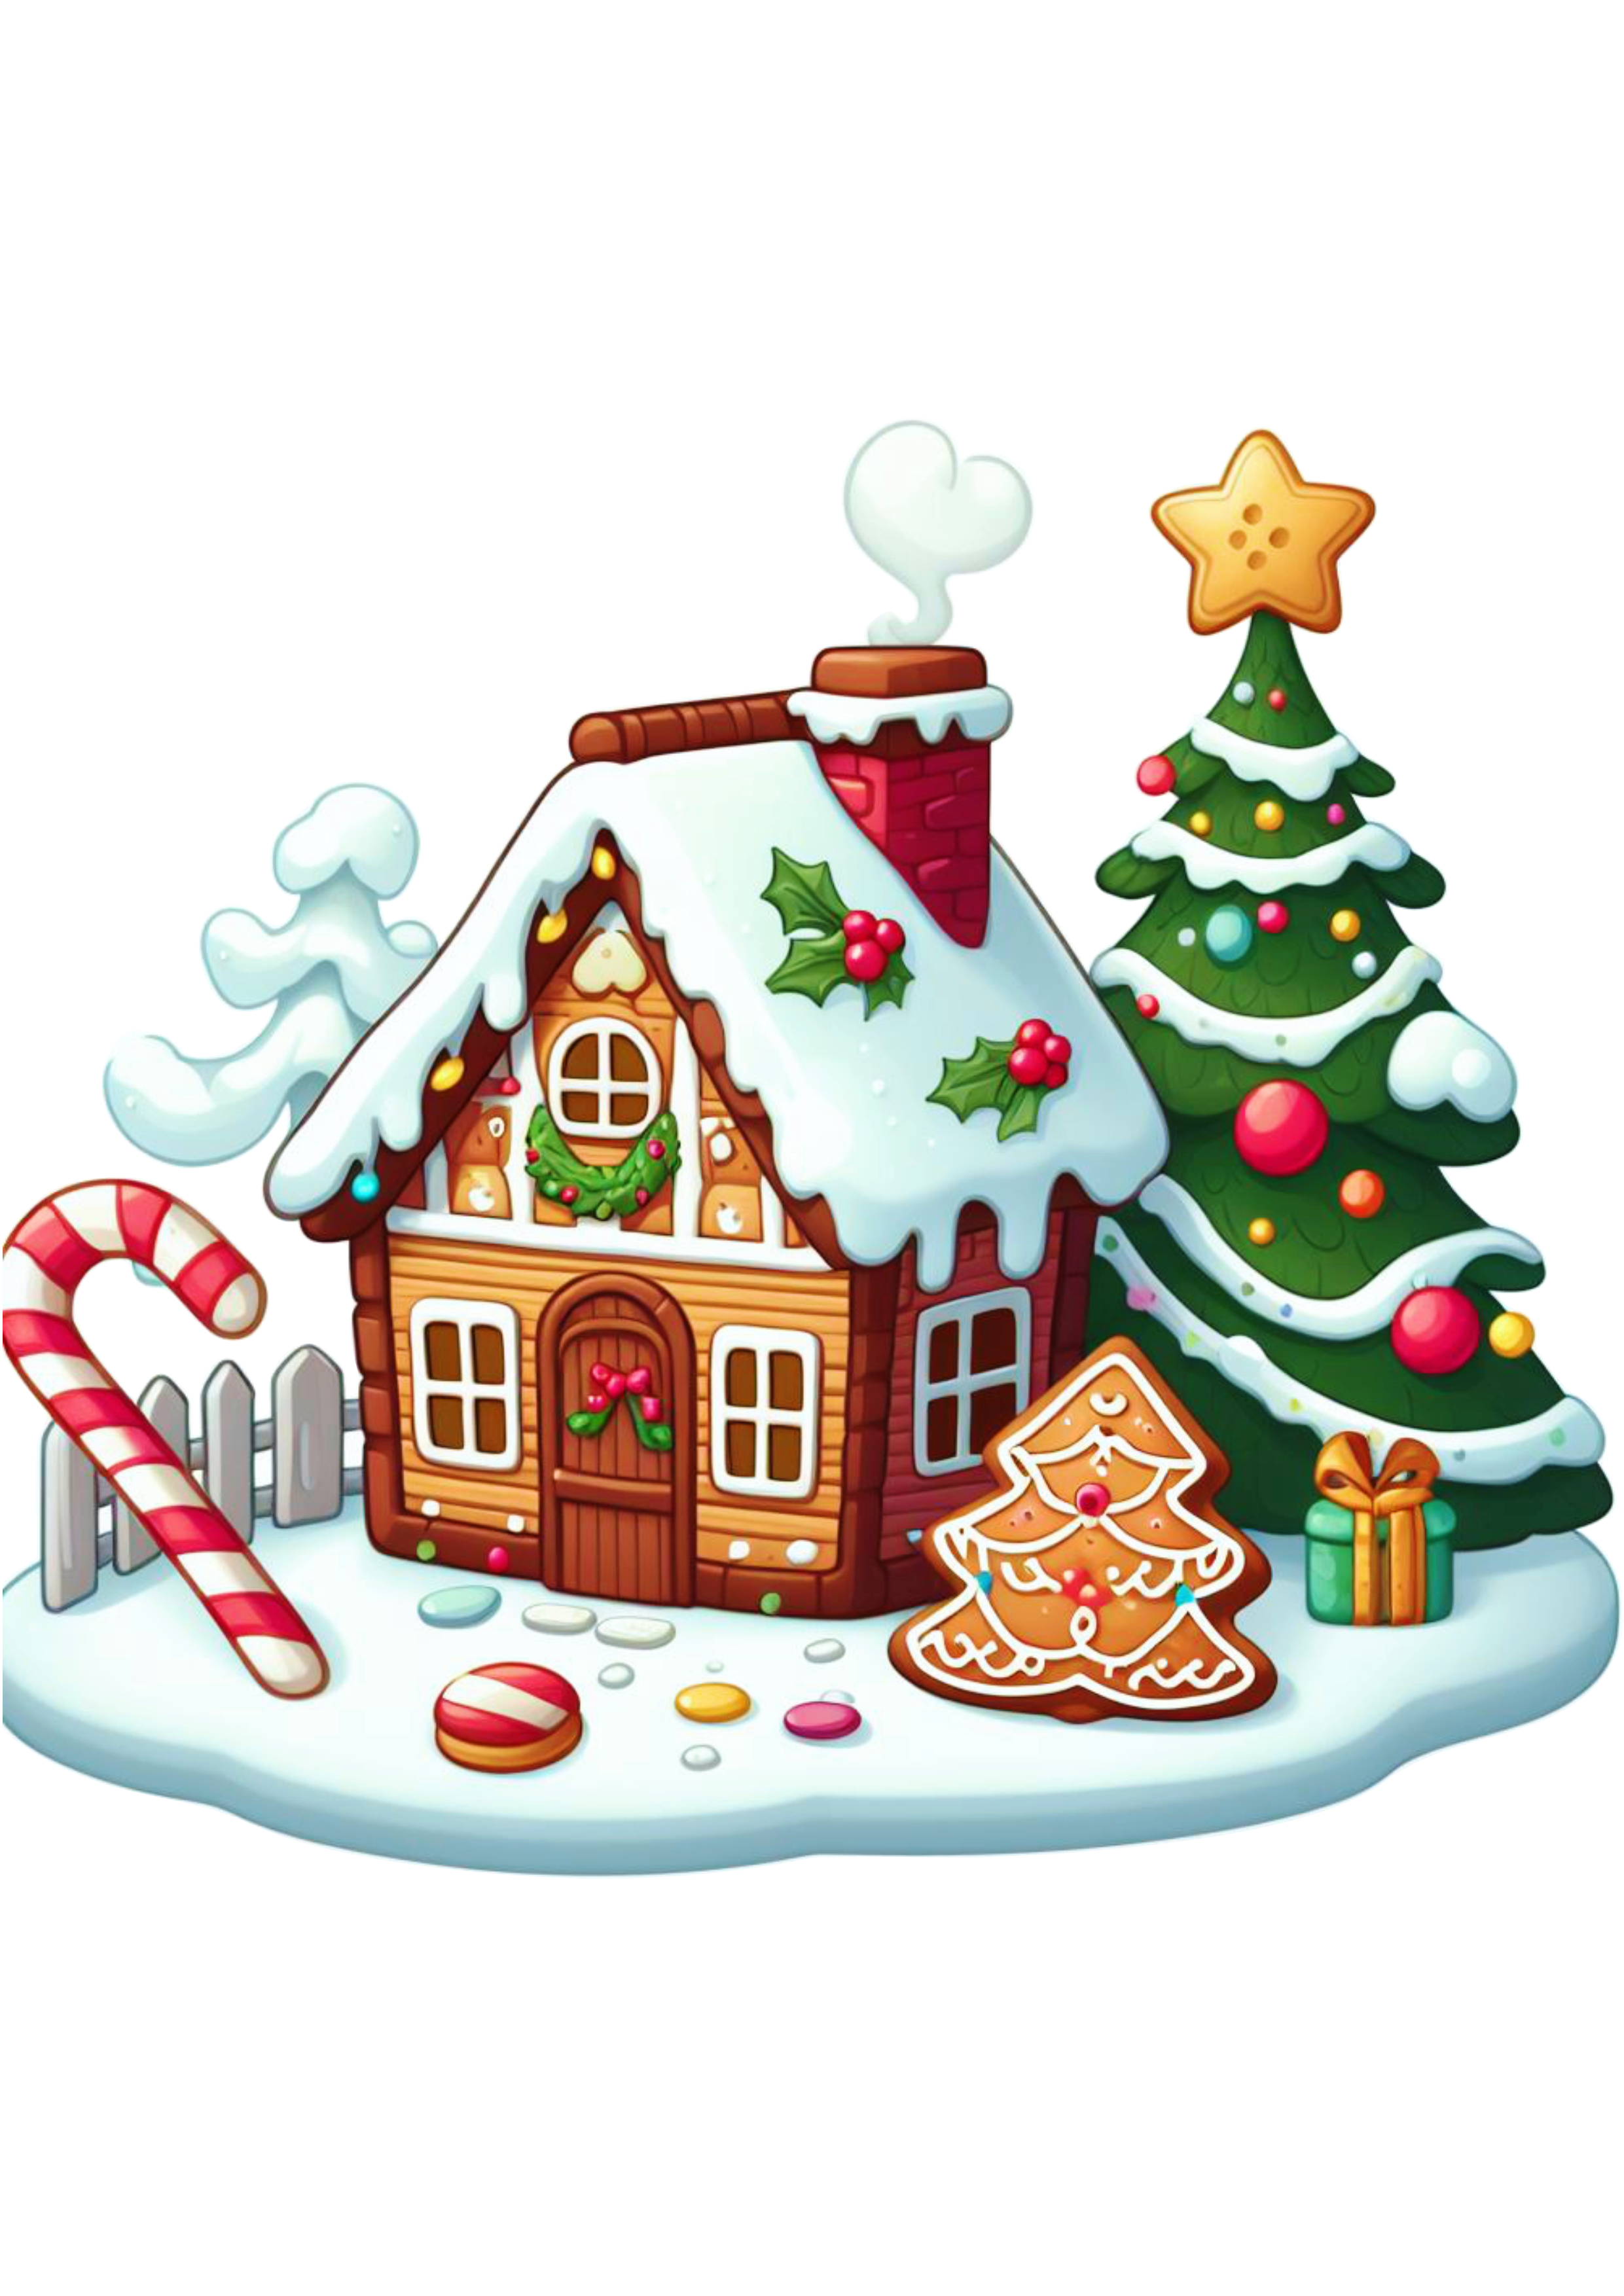 Biscoito de natal cenário casinha decorada neve png